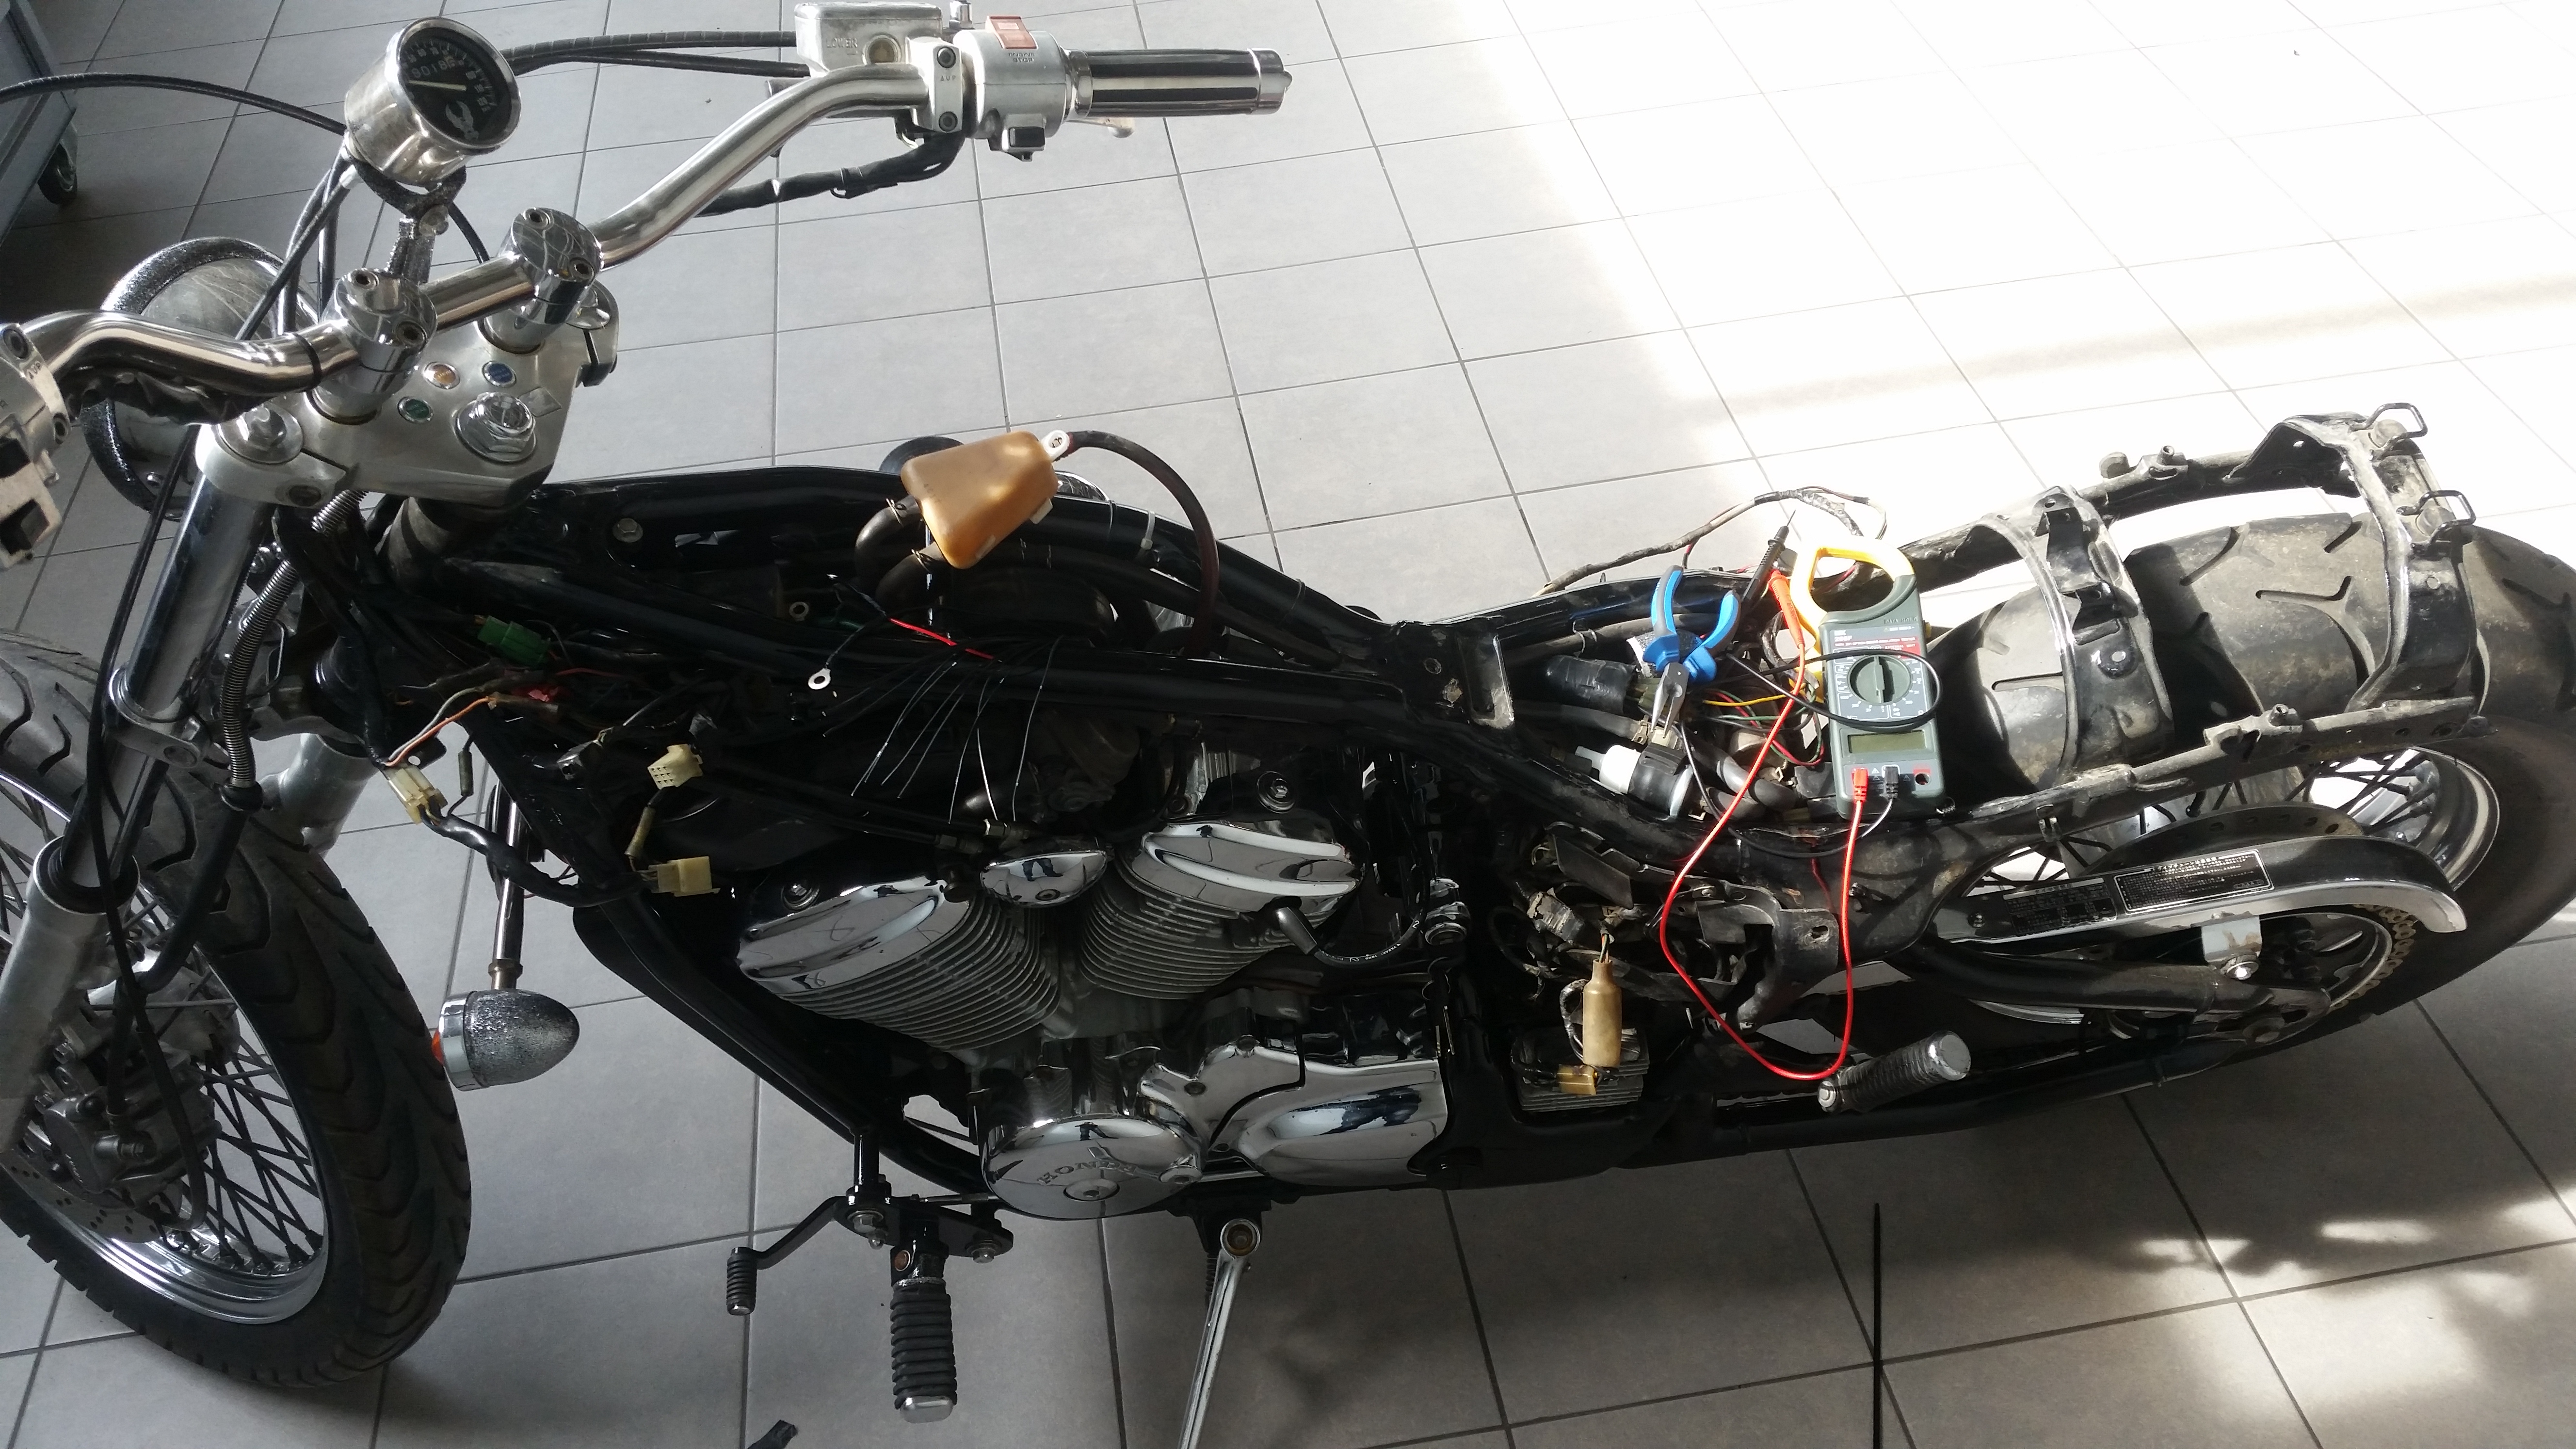 Мотосигнализация starline moto v66